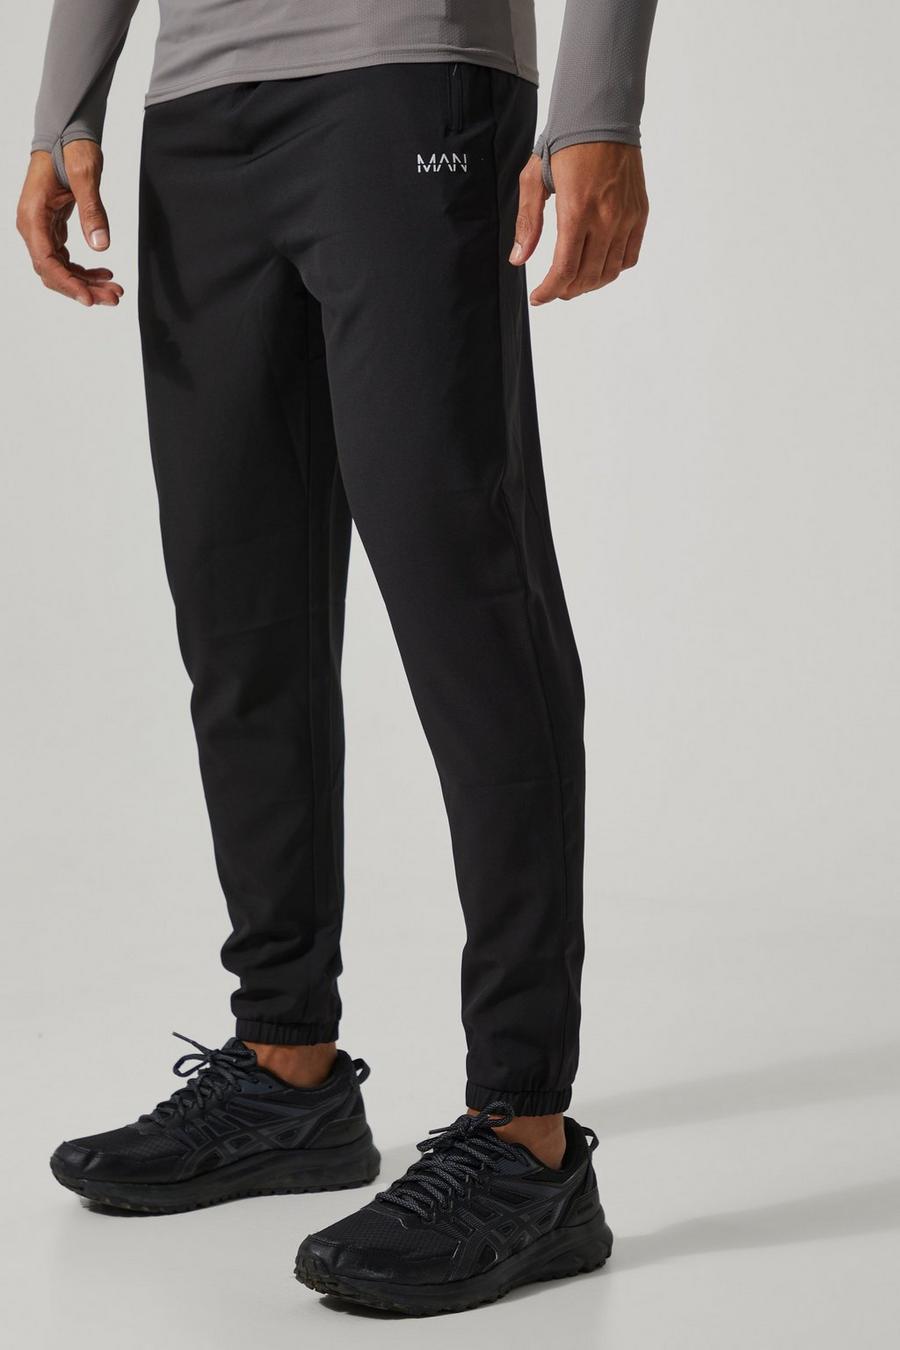 Pantalón deportivo MAN Active ajustado, Black